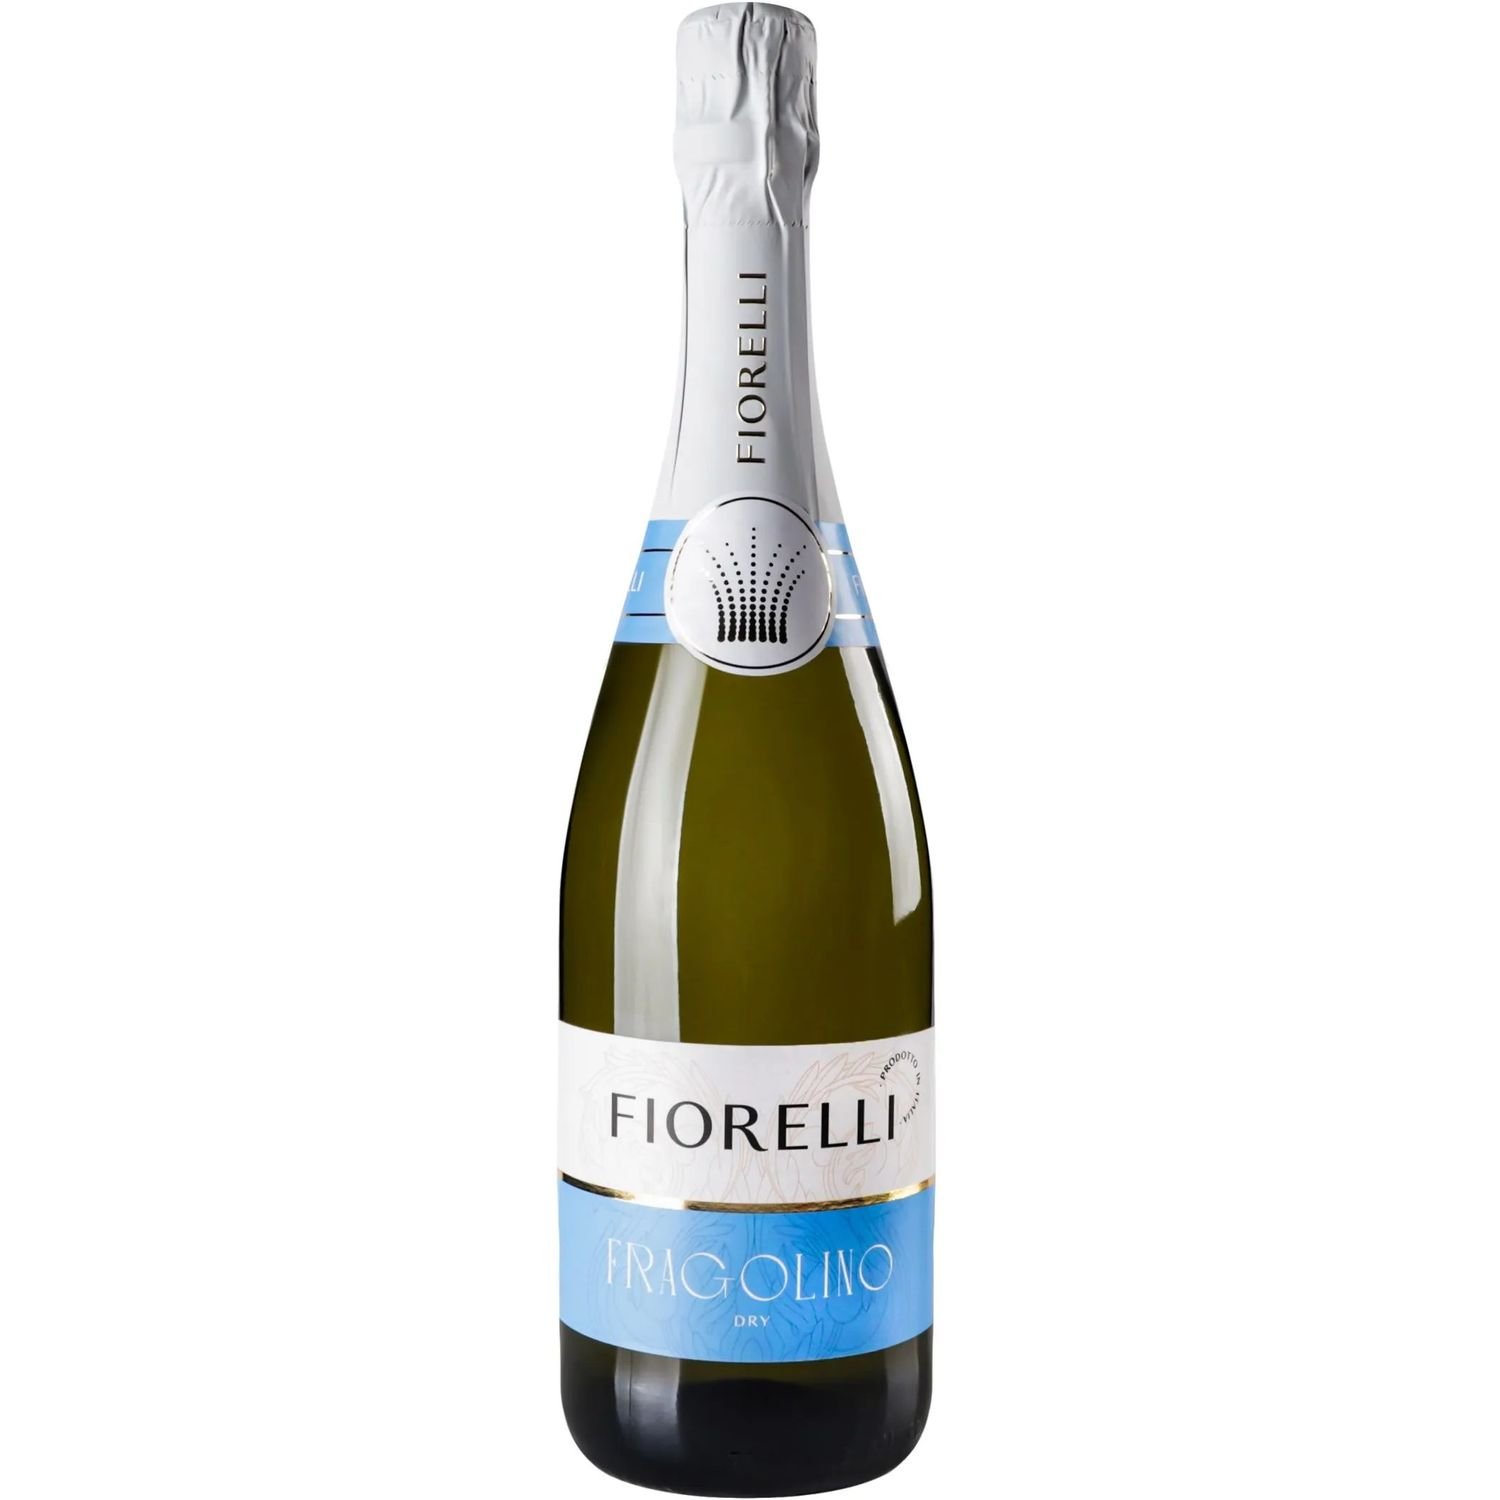 Напиток игристый Fiorelli Fragolino Dry, белый, сухой, 7%, 0,75 л (747011) - фото 1